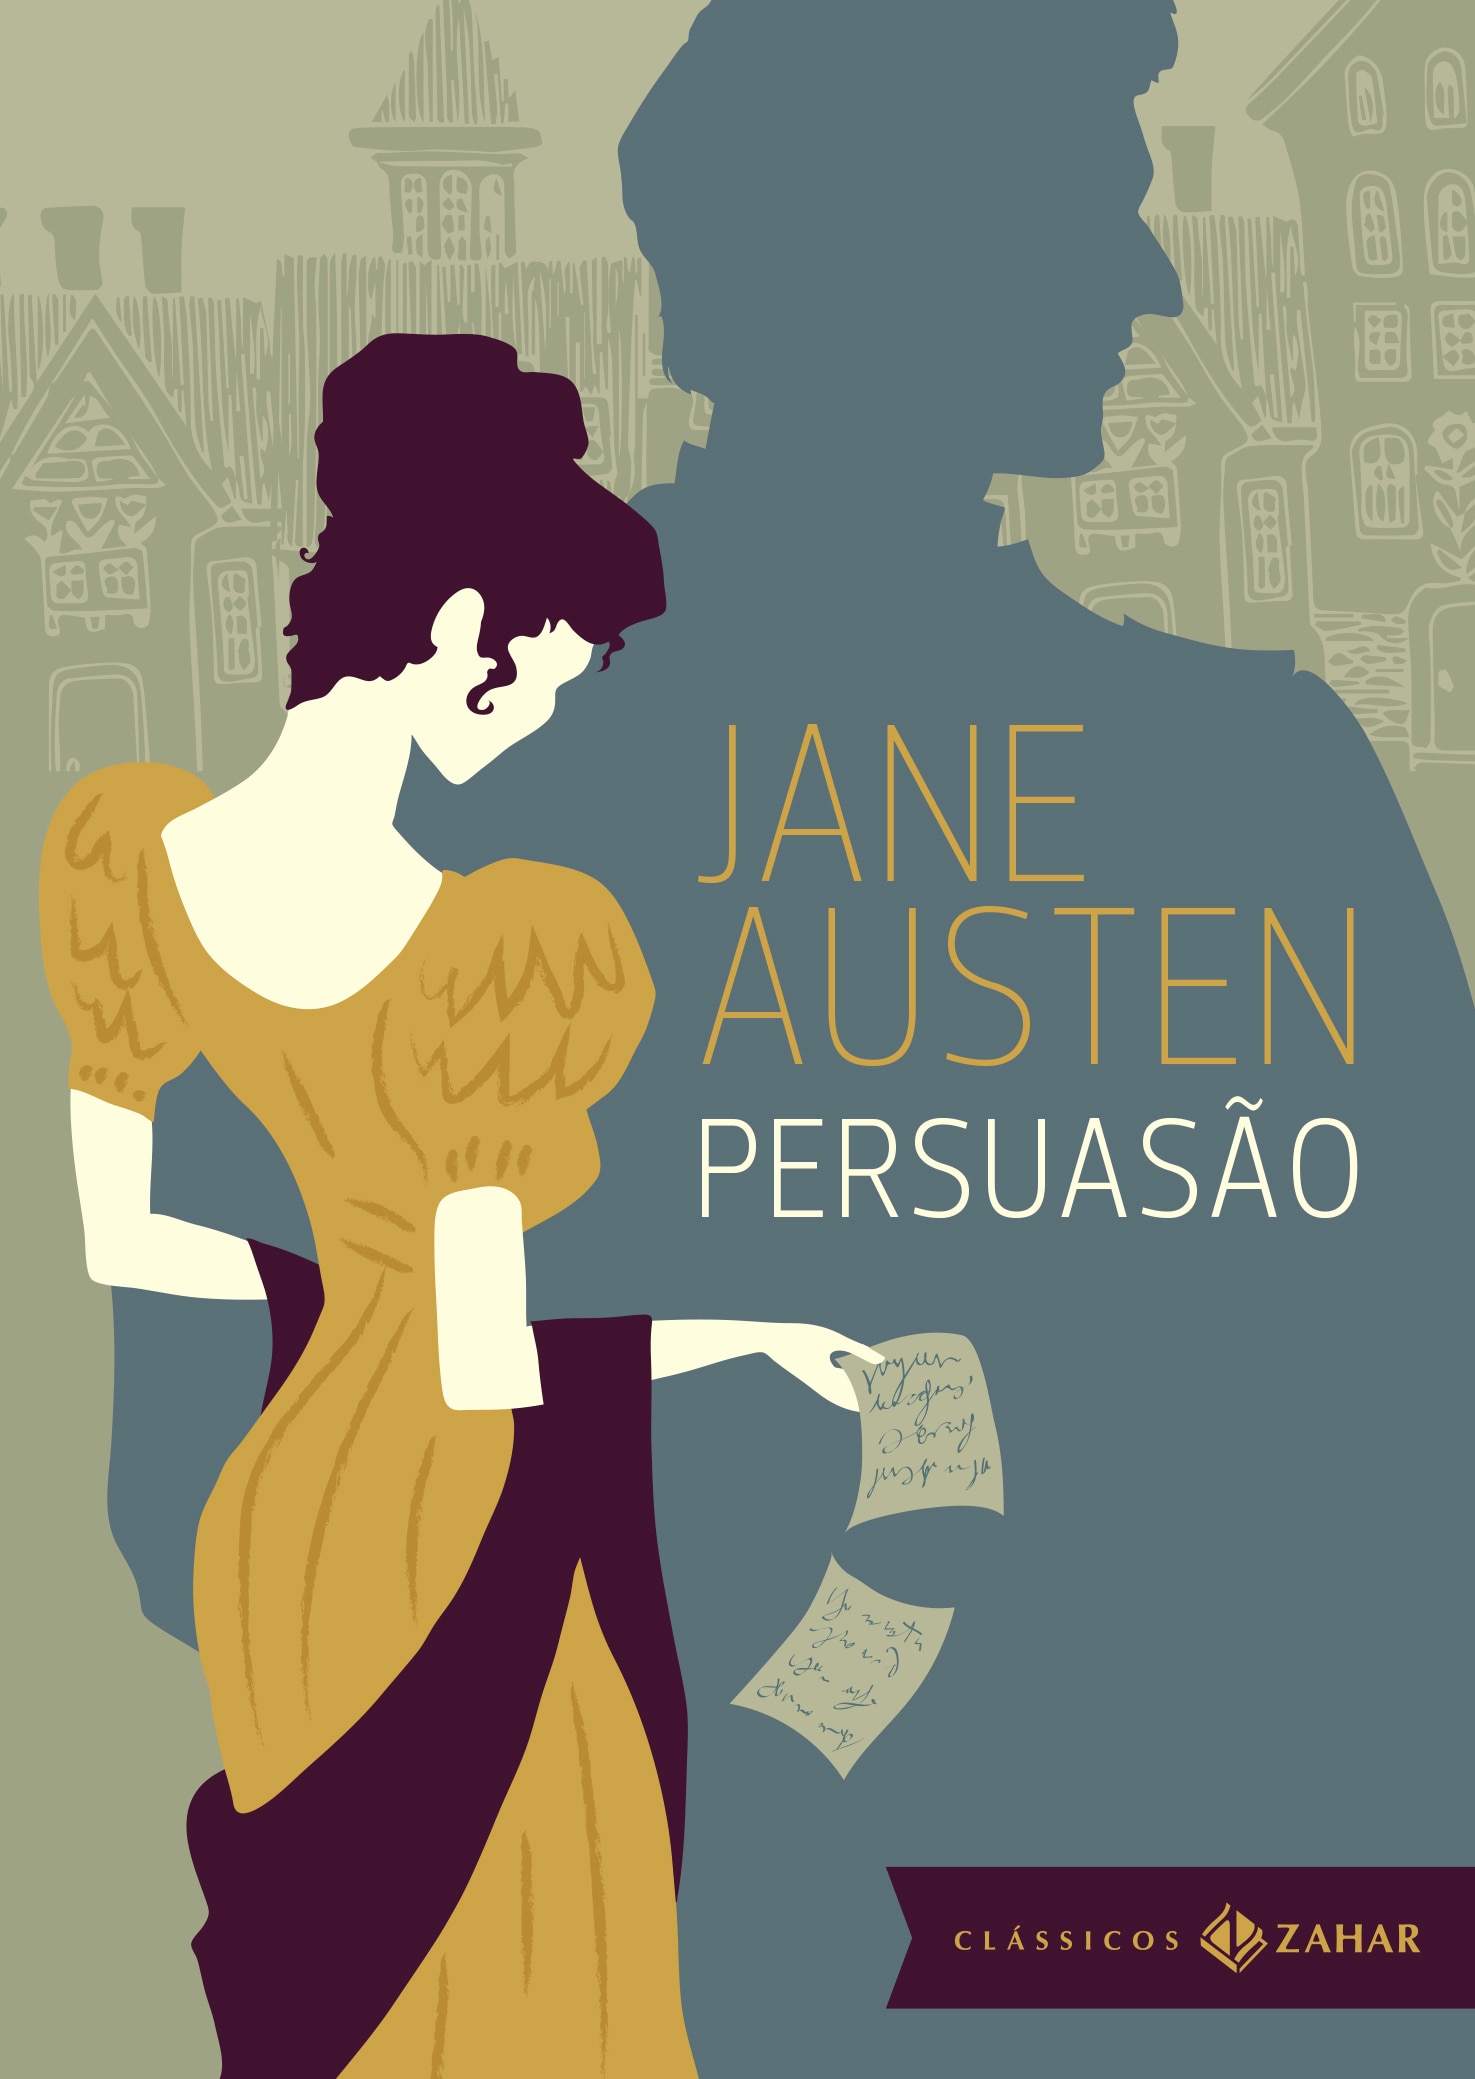 Congresso Jane Austen 200: bicentenário da morte da autora britânica -  Plataforma 9